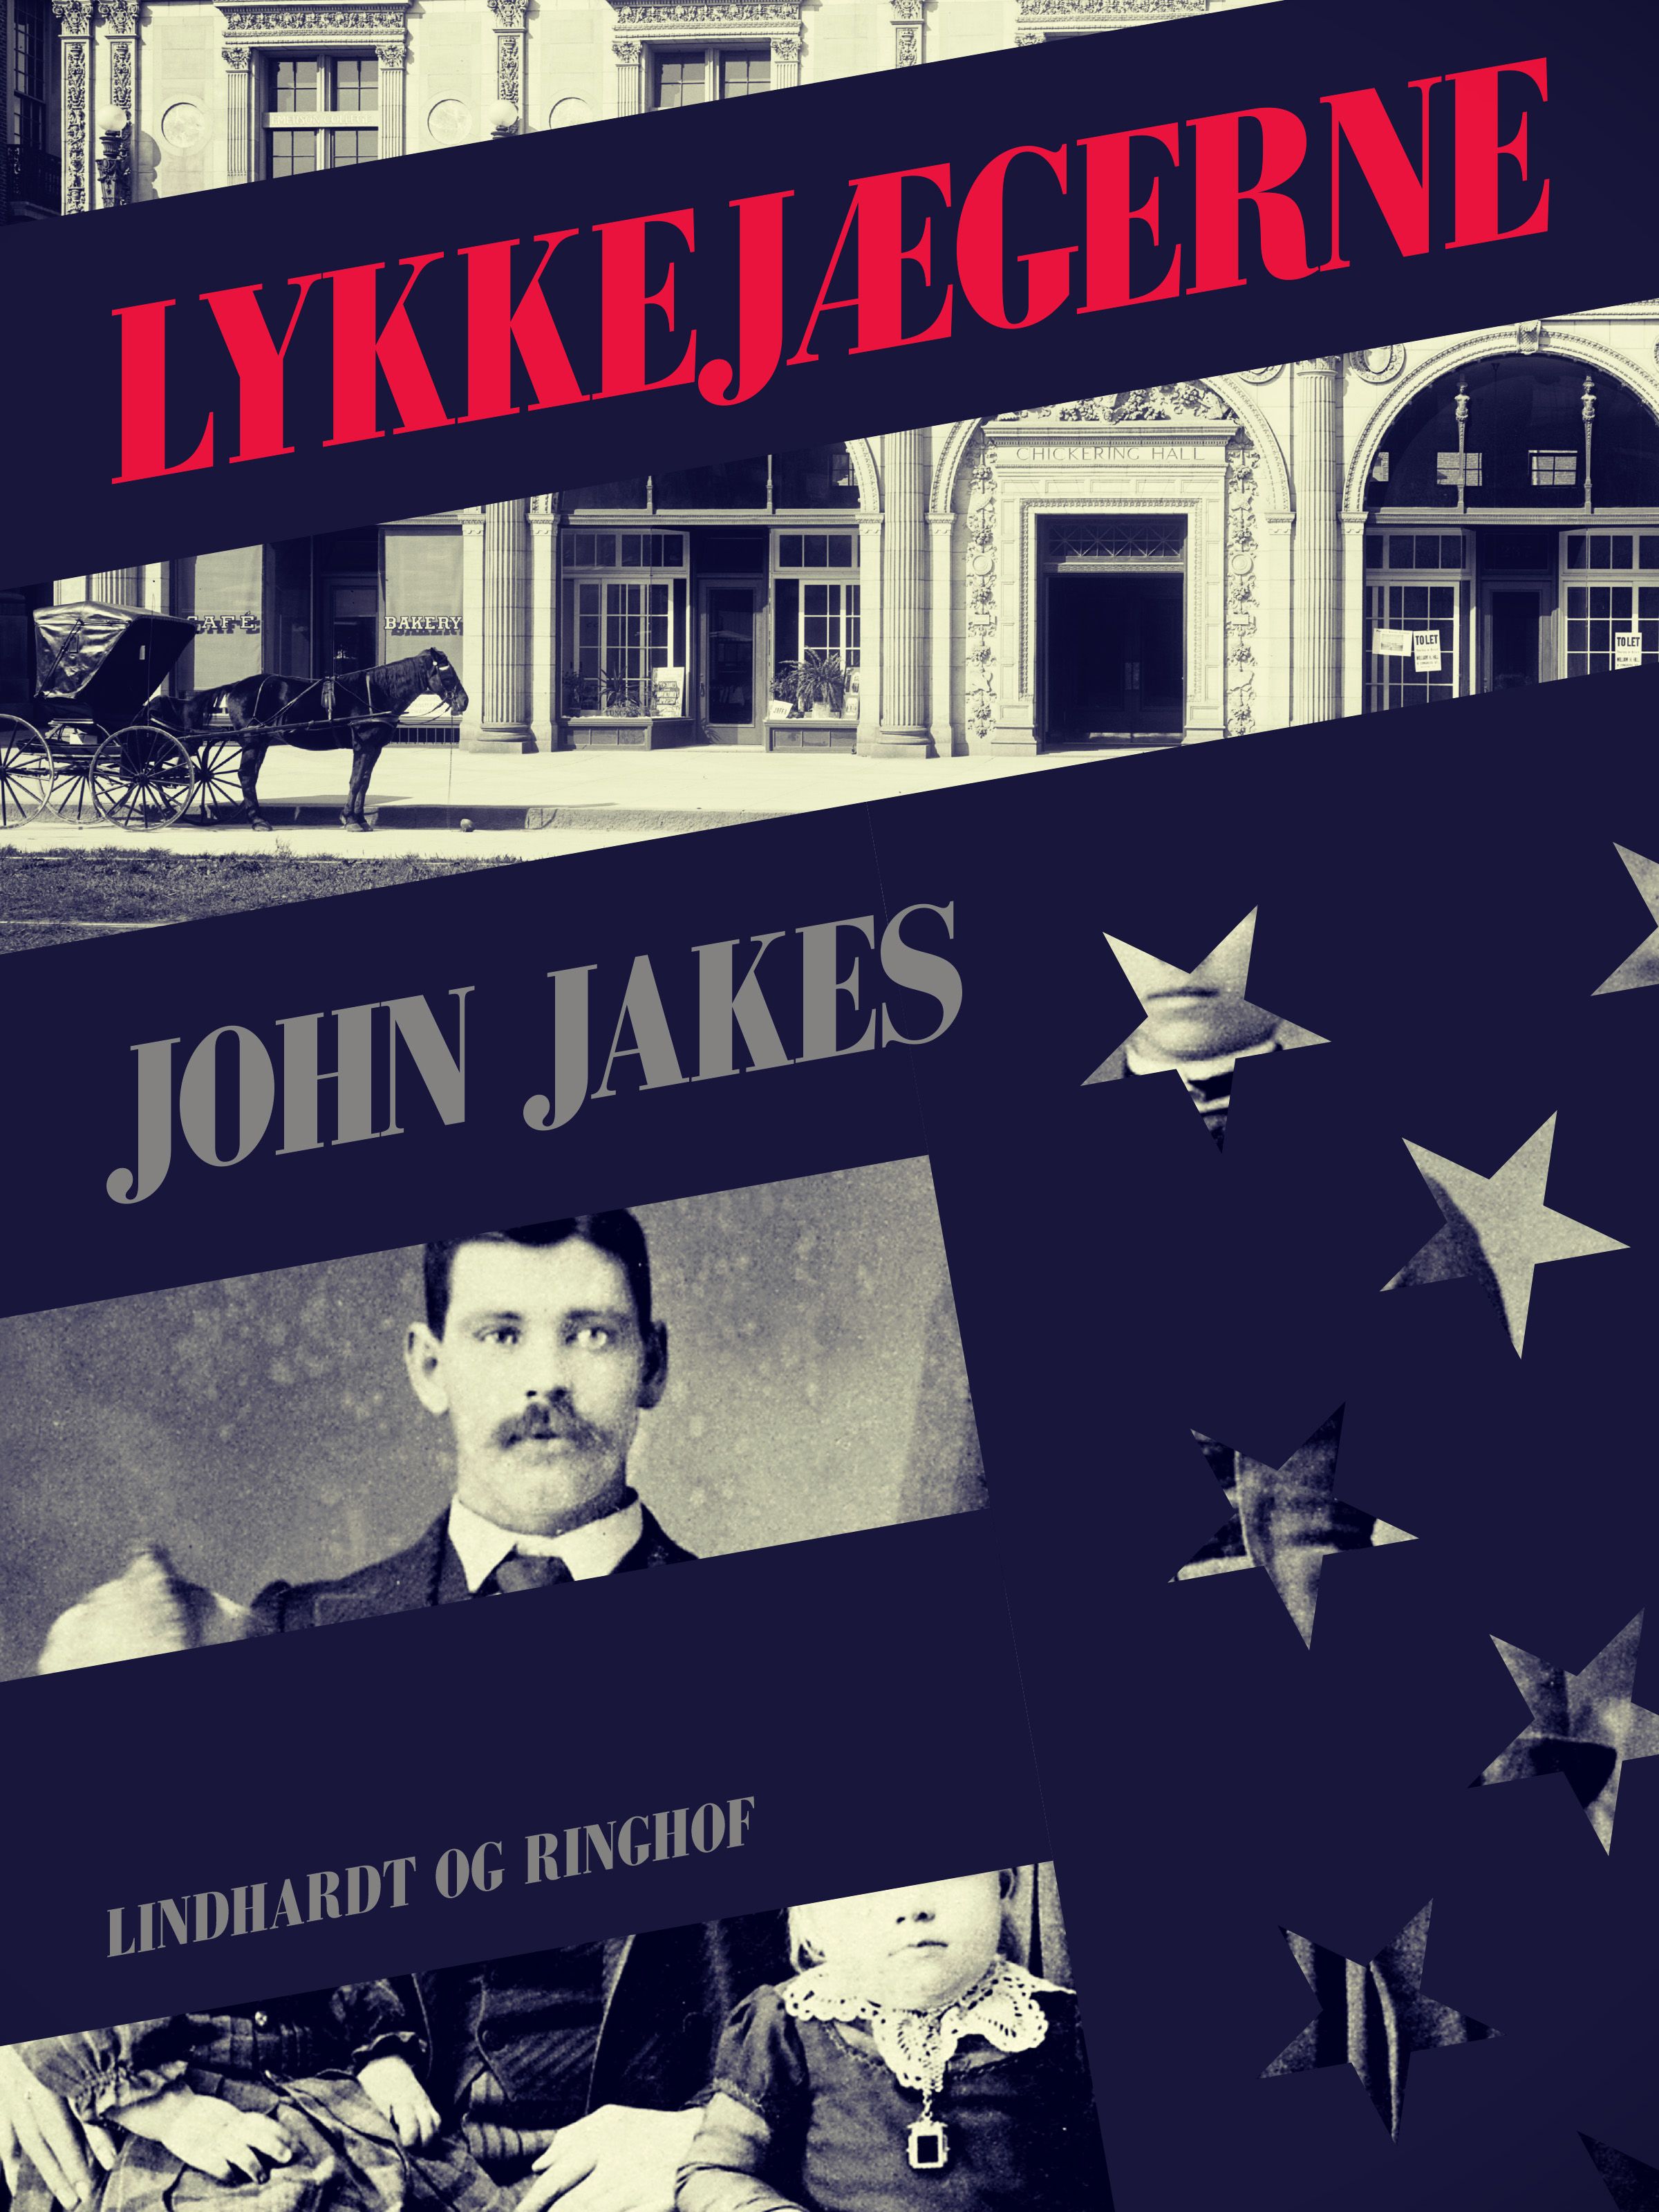 Lykkejægerne, e-bog af John Jakes